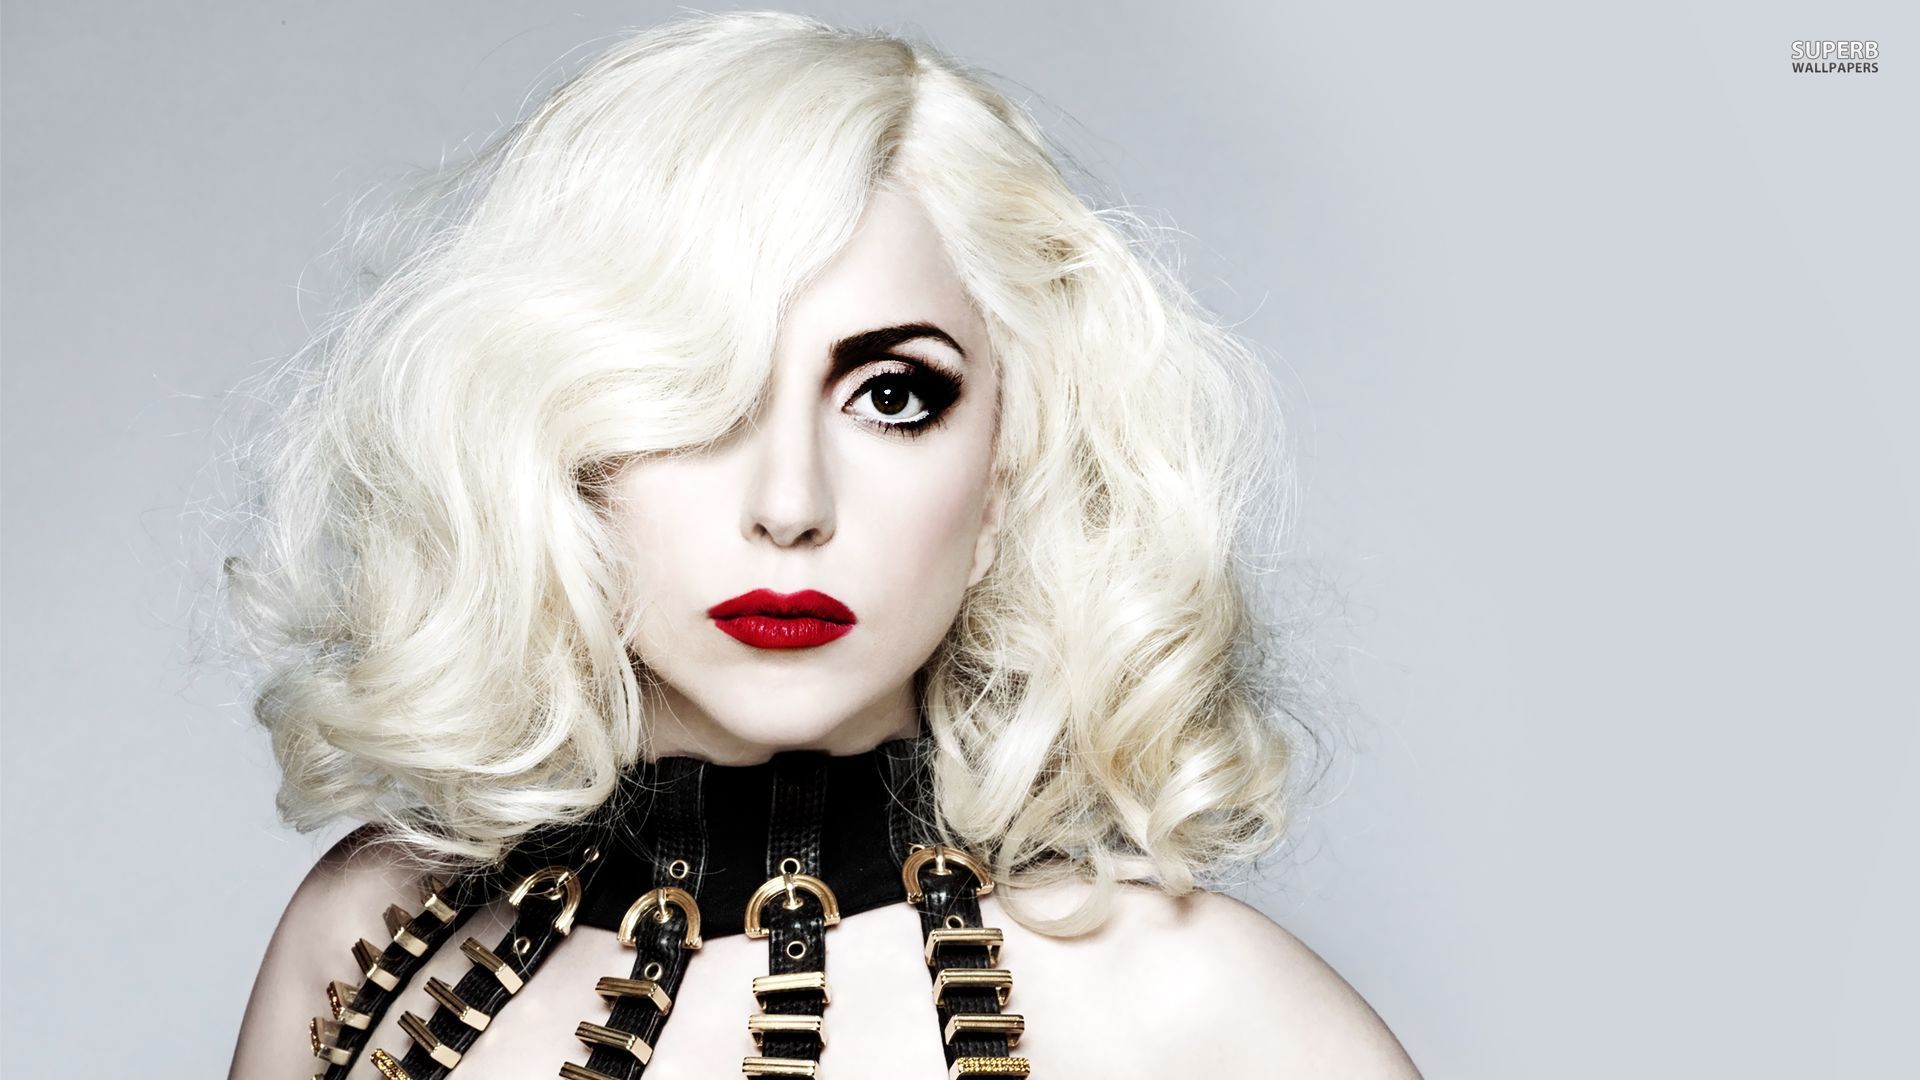 Actualité: Lady Gaga souffre de ce syndrome